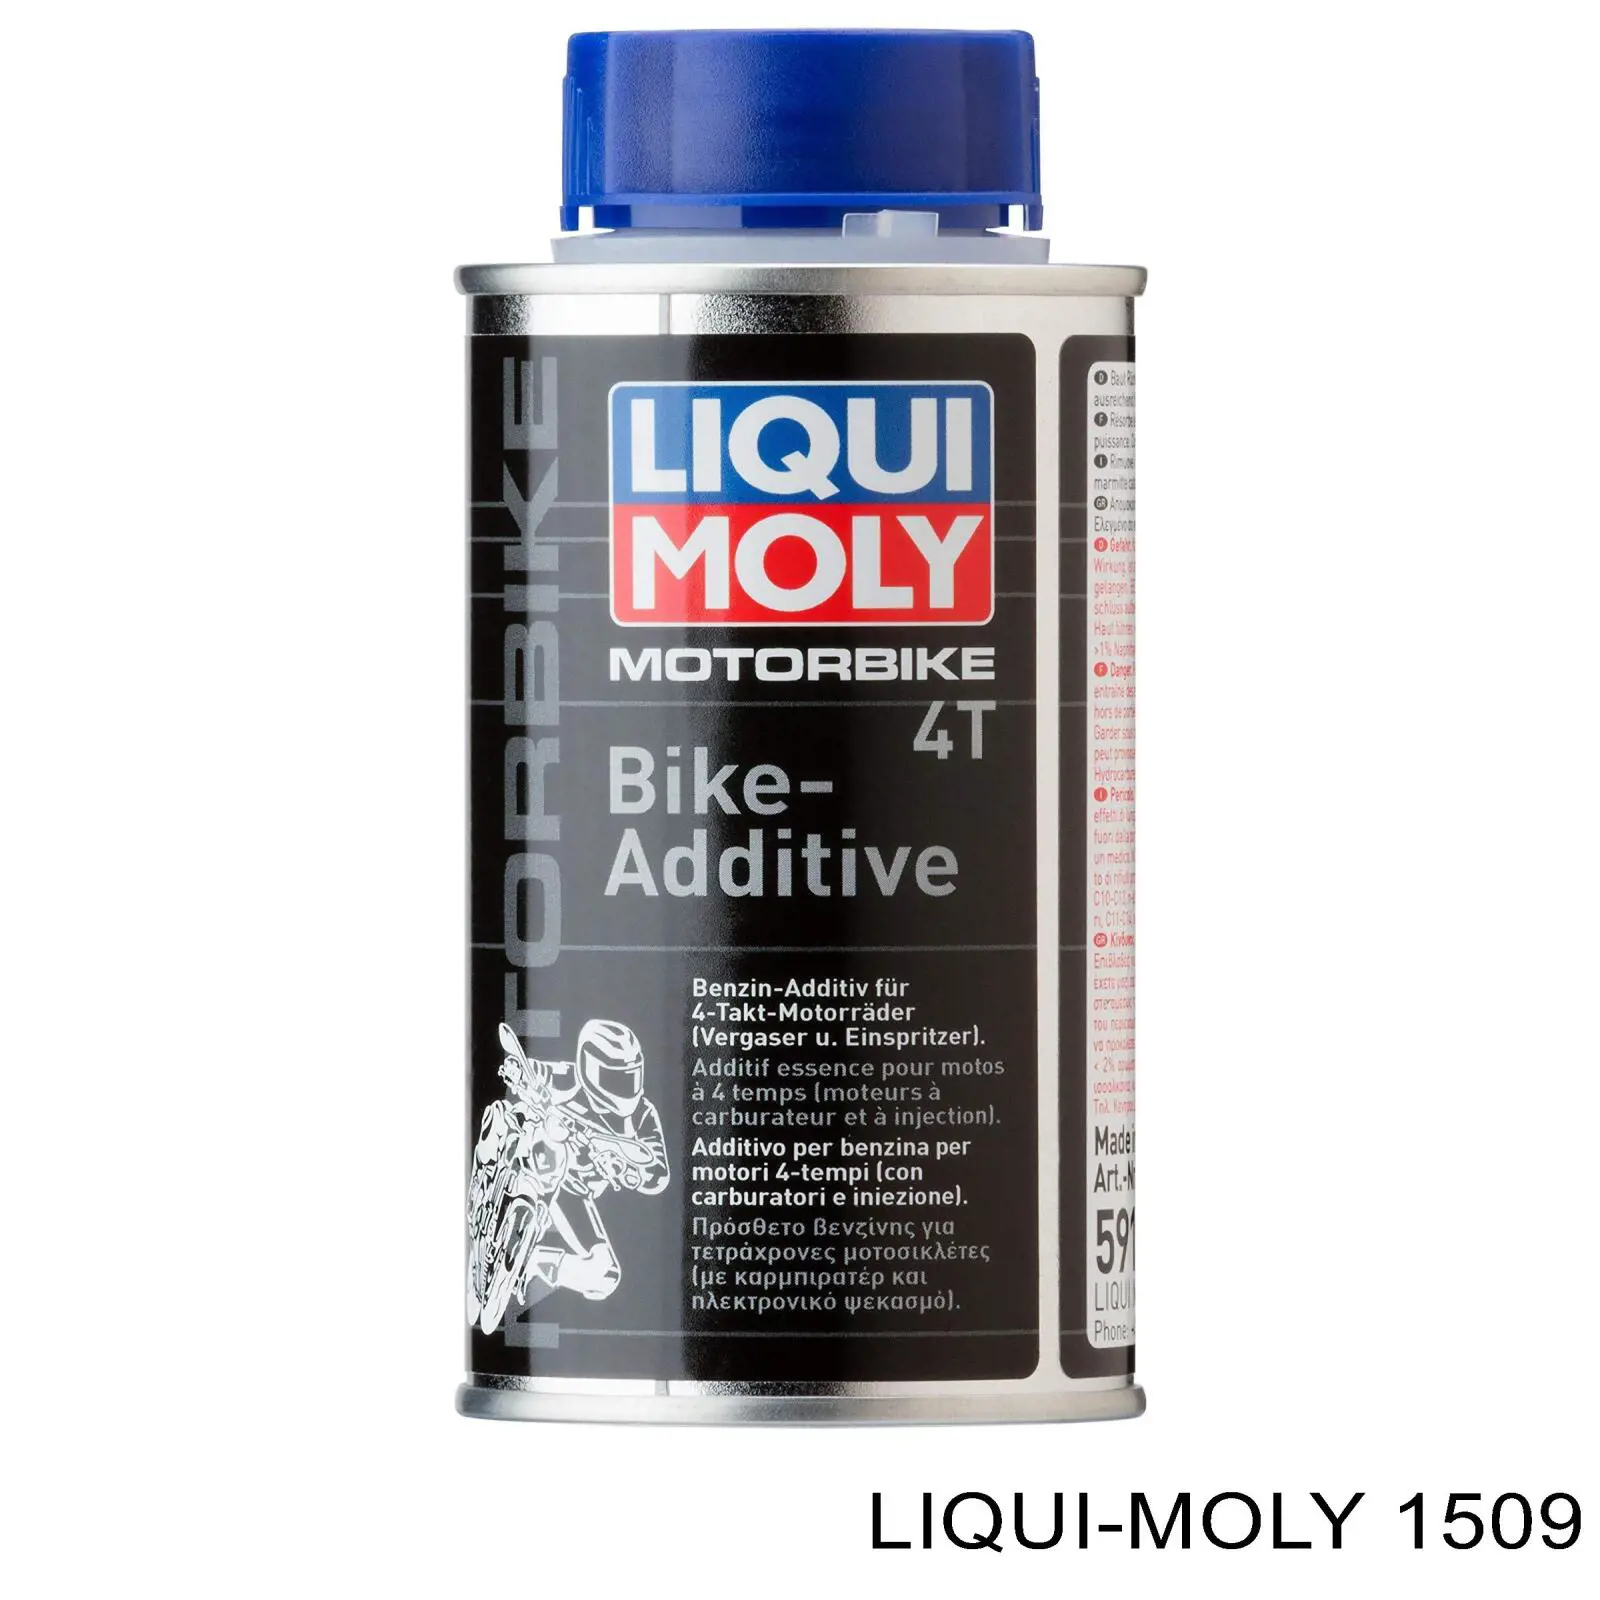 1509 Liqui Moly очиститель кузова